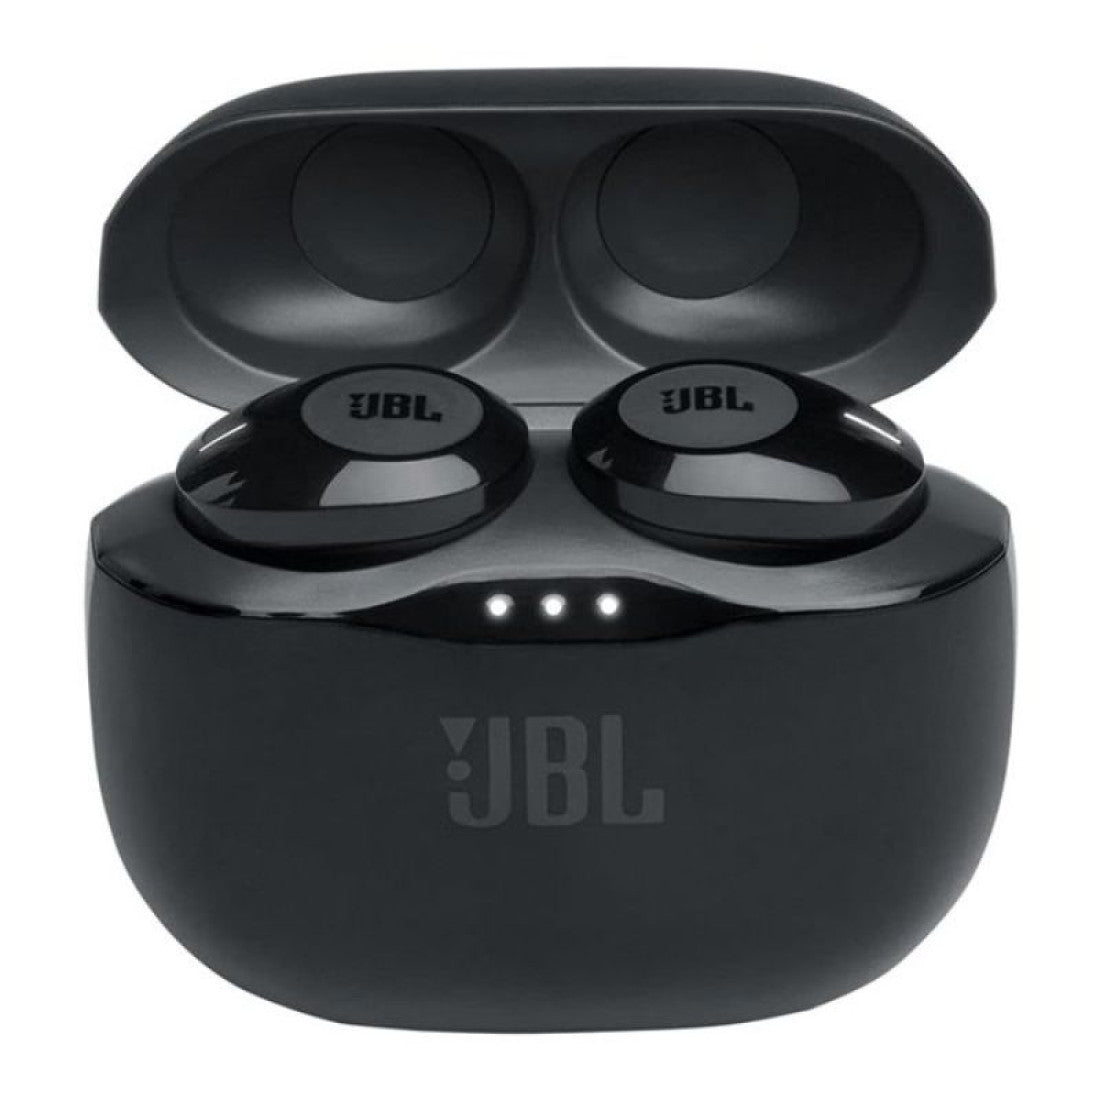 JBL BLUETOOTH TRUE WIRELESS EARPHONE T120TWS - BLACK